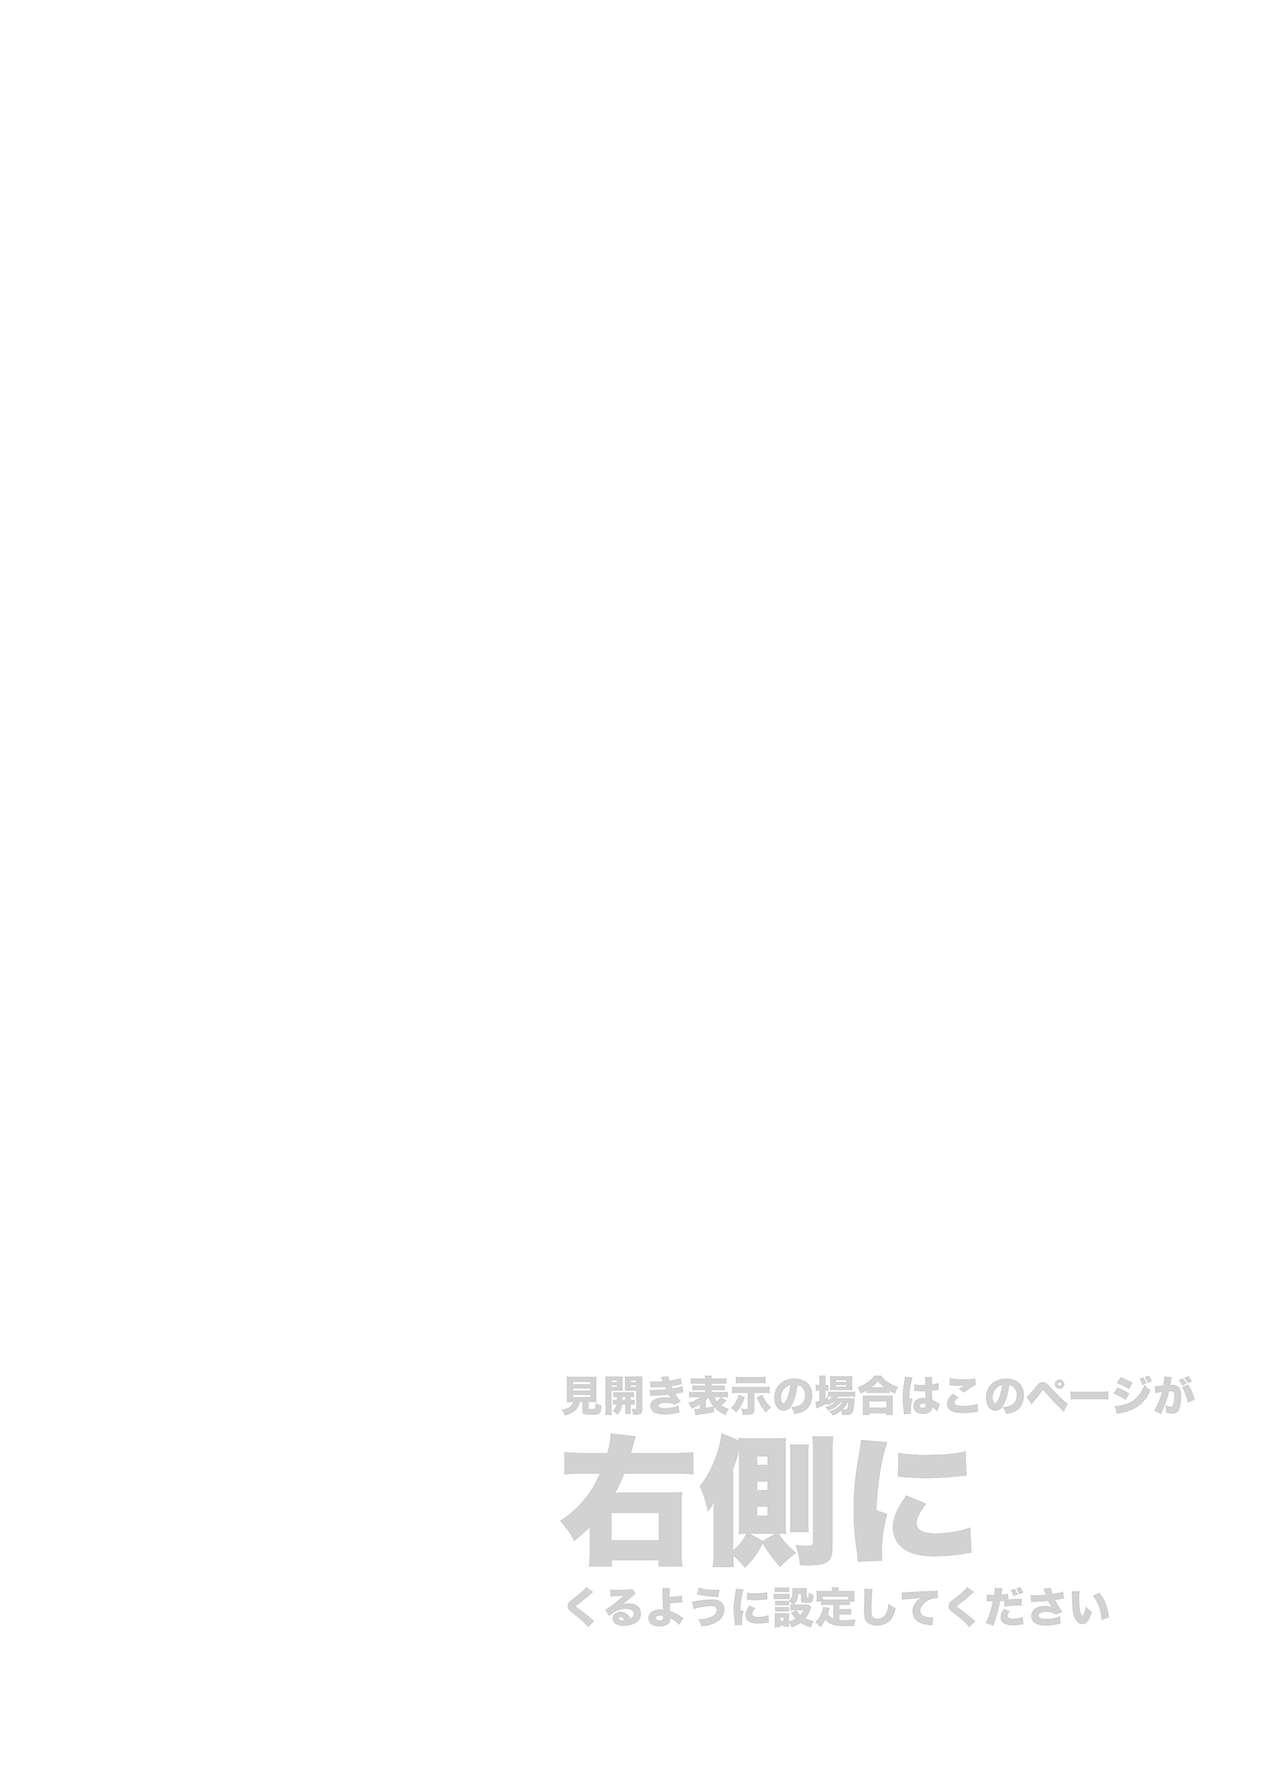 Butt Fuck Kore wa Kintore Nanda Honto dayo Shinjite - Mobile suit gundam tekketsu no orphans Trap - Page 2